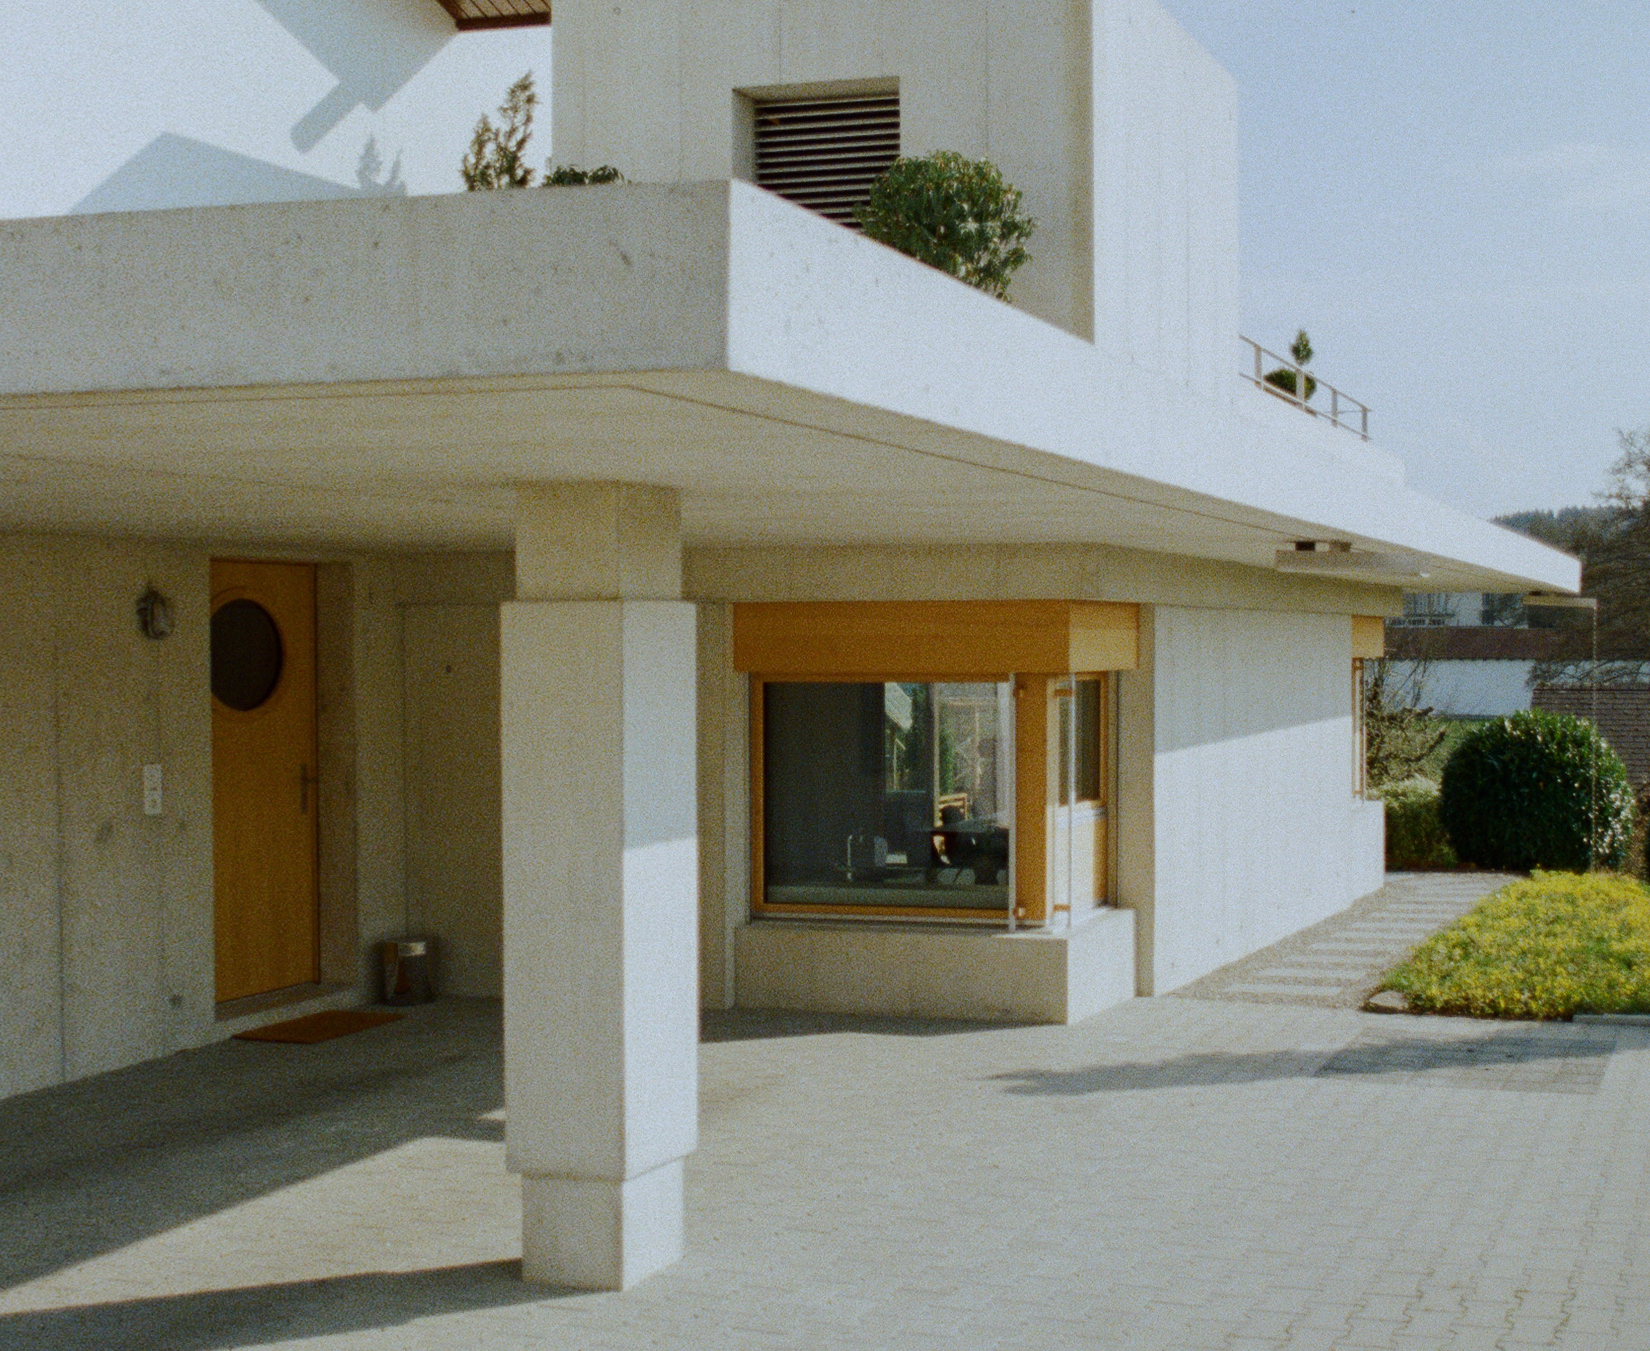 Дом с колонной / Architekturkollektiv filiale